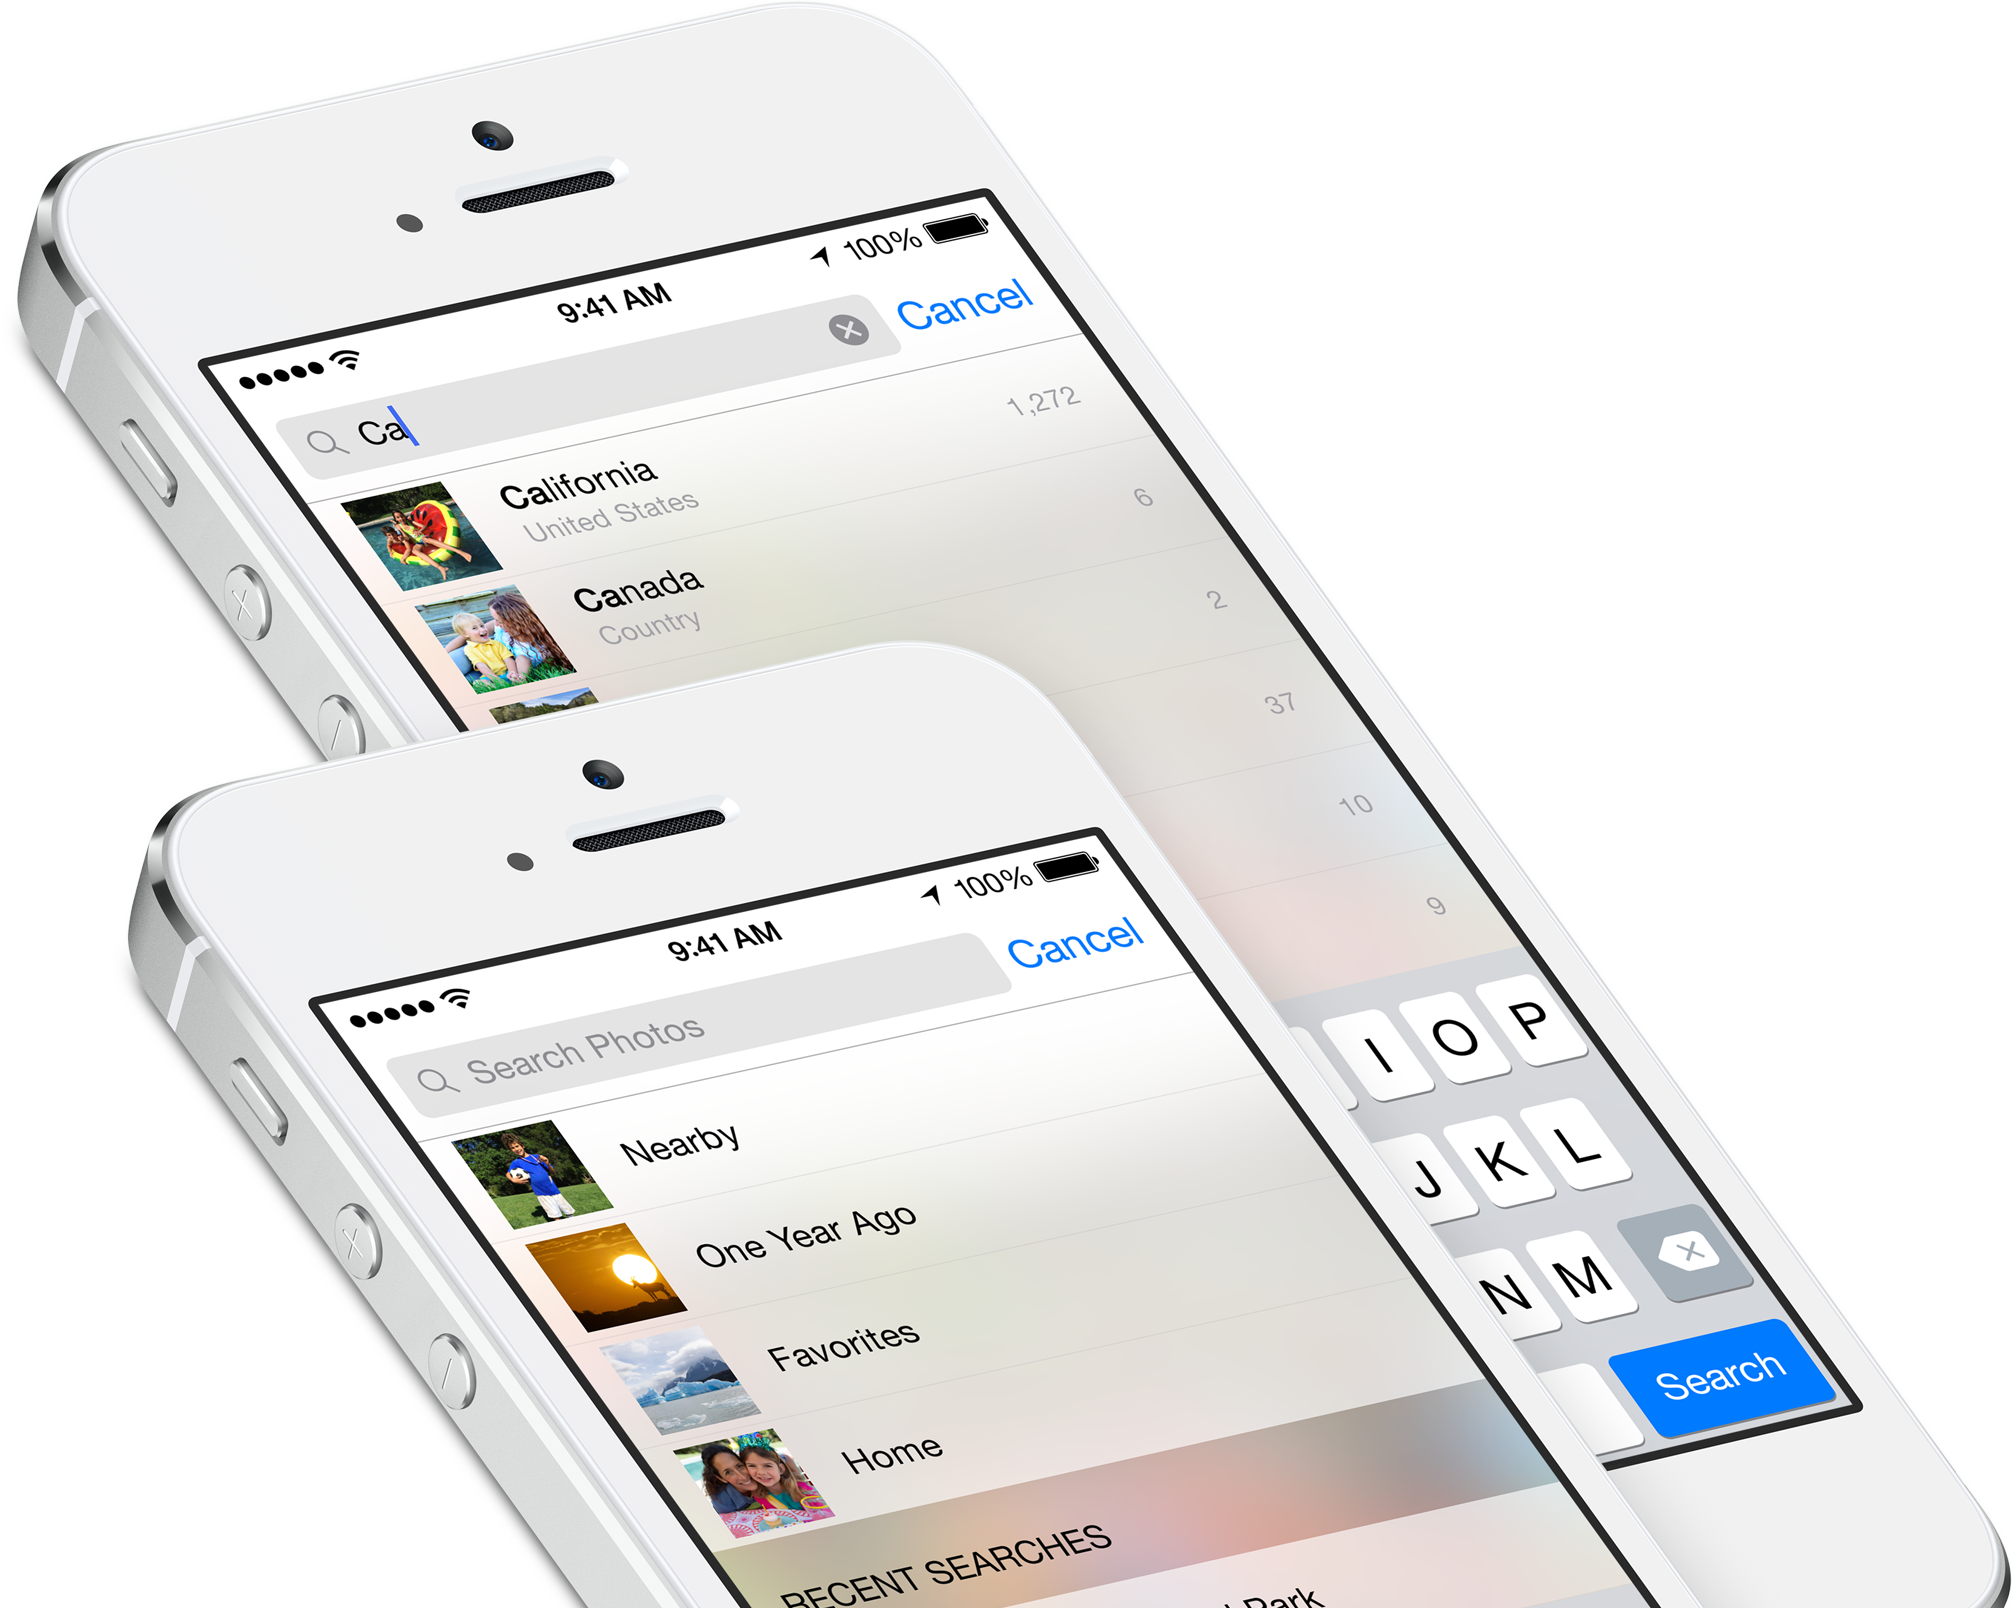 Buscas em Fotos do iOS 8 em iPhones